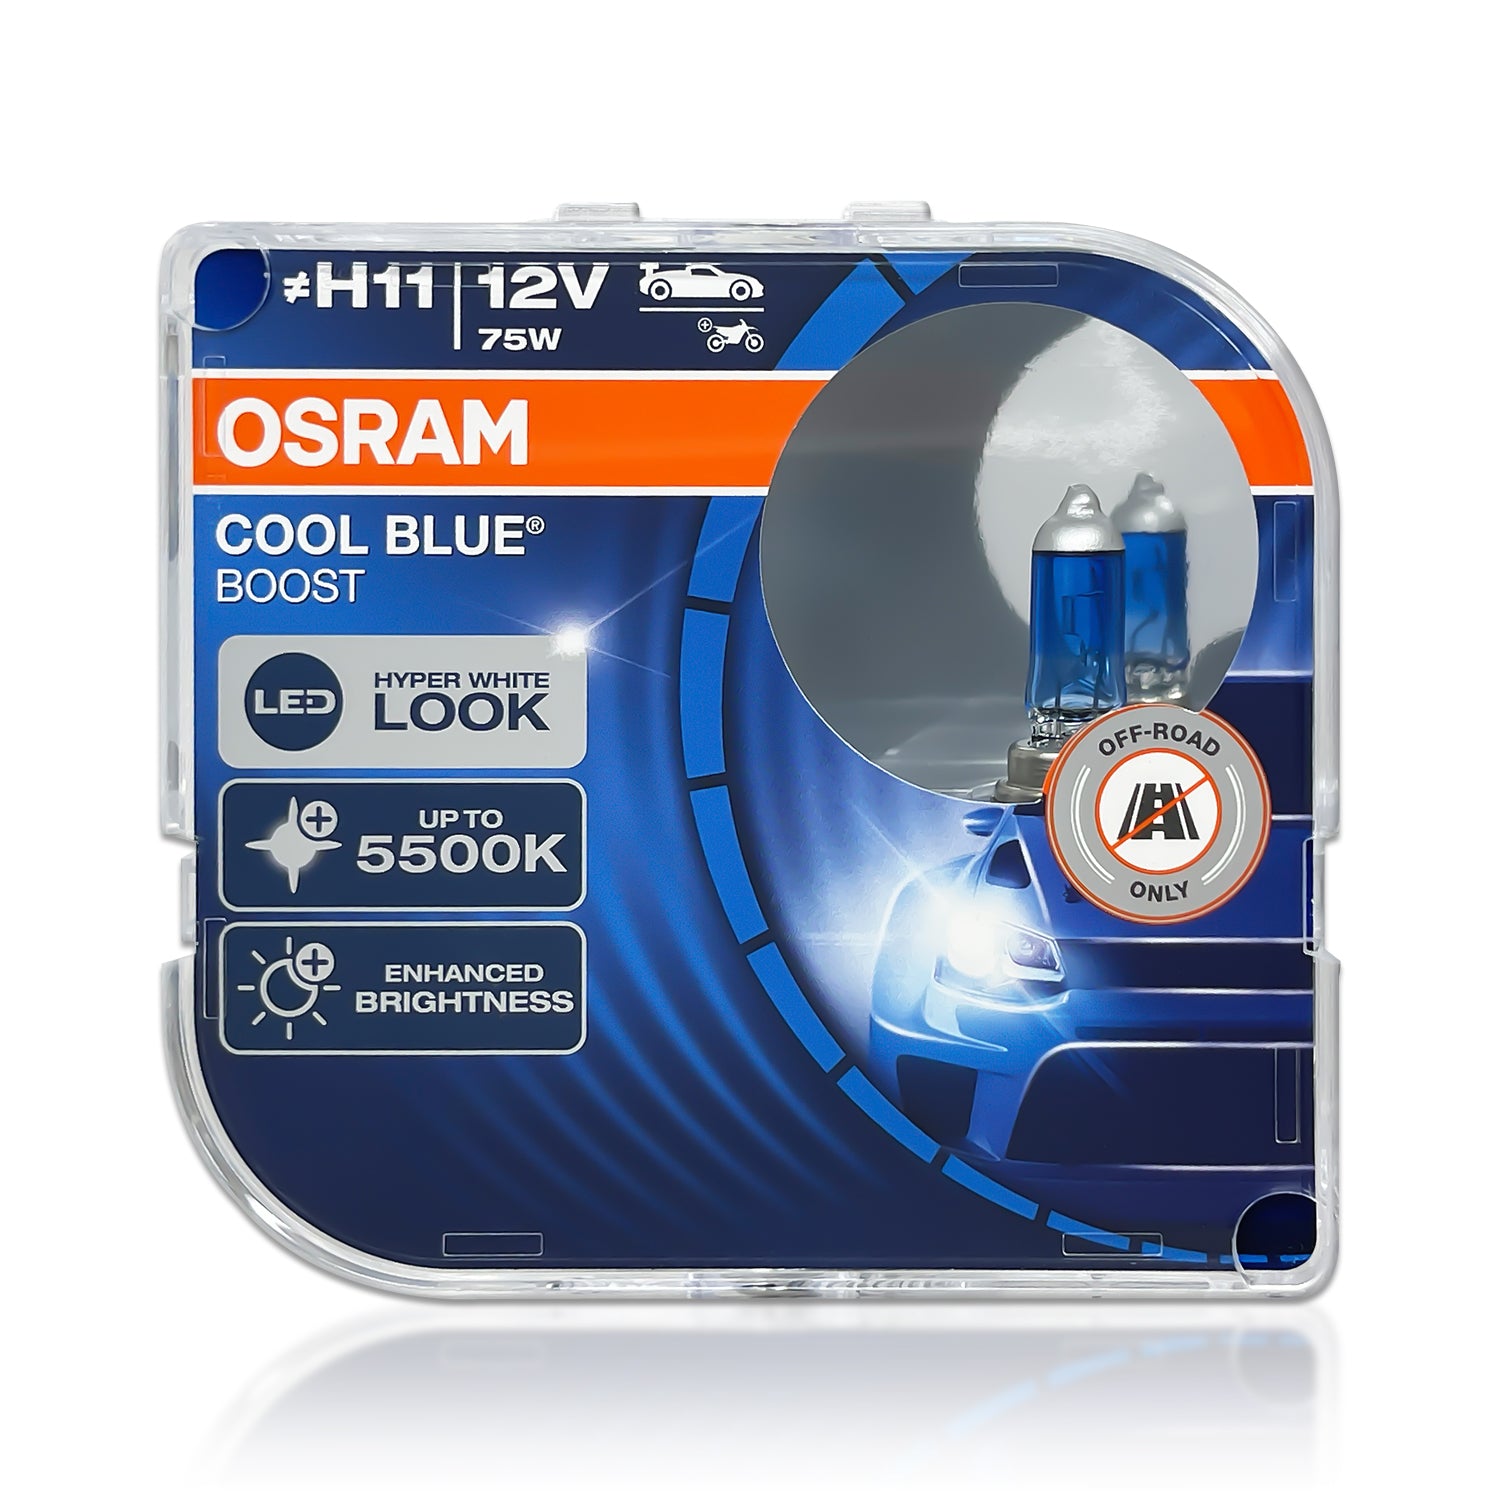 H11 Osram Cool Blue Boost Halogen Bulbs